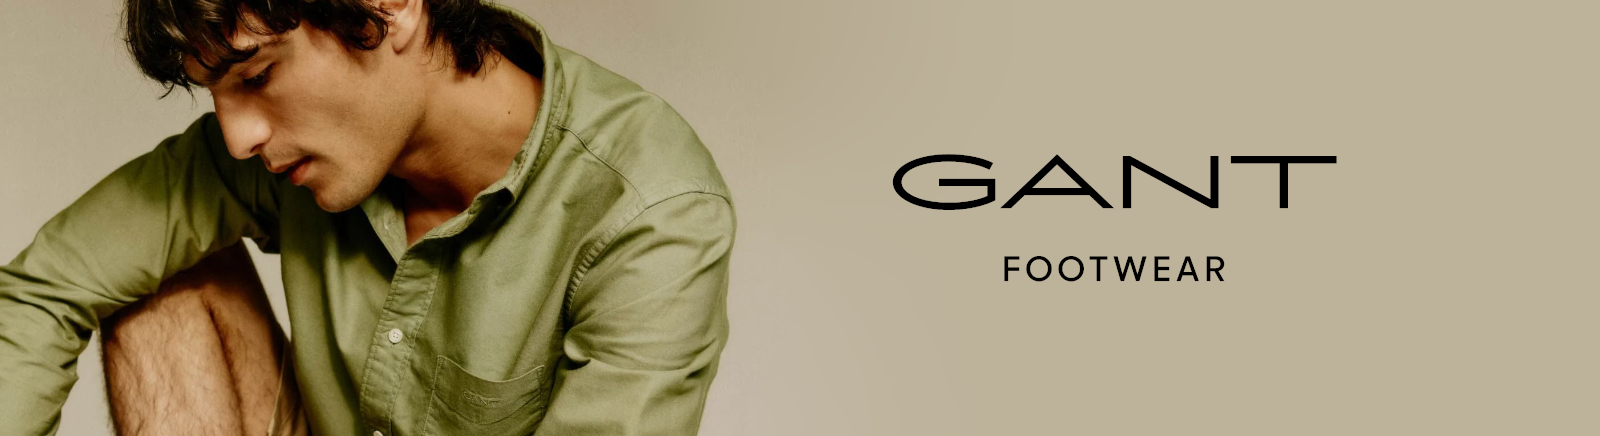 Prange: Gant Klassische Stiefeletten für Damen online shoppen